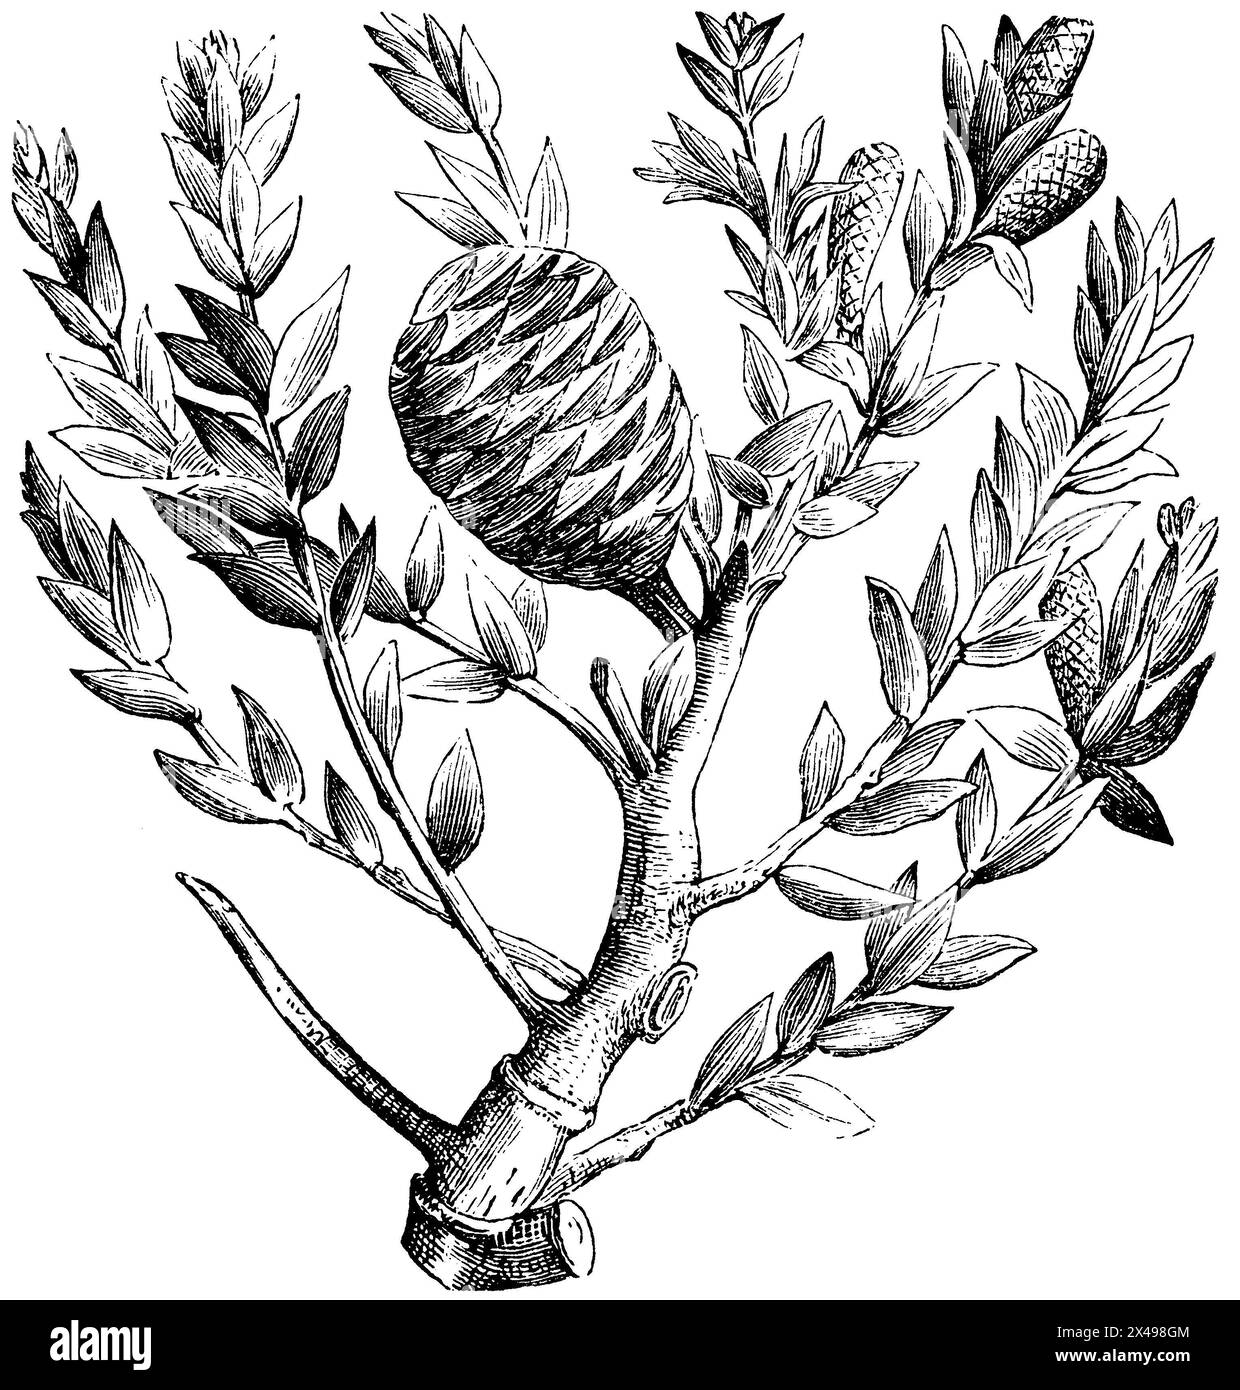 dammar pine, Agathis dammara,  (encyclopedia, 1893), Dammarfichte, Agathis dammara Stock Photo